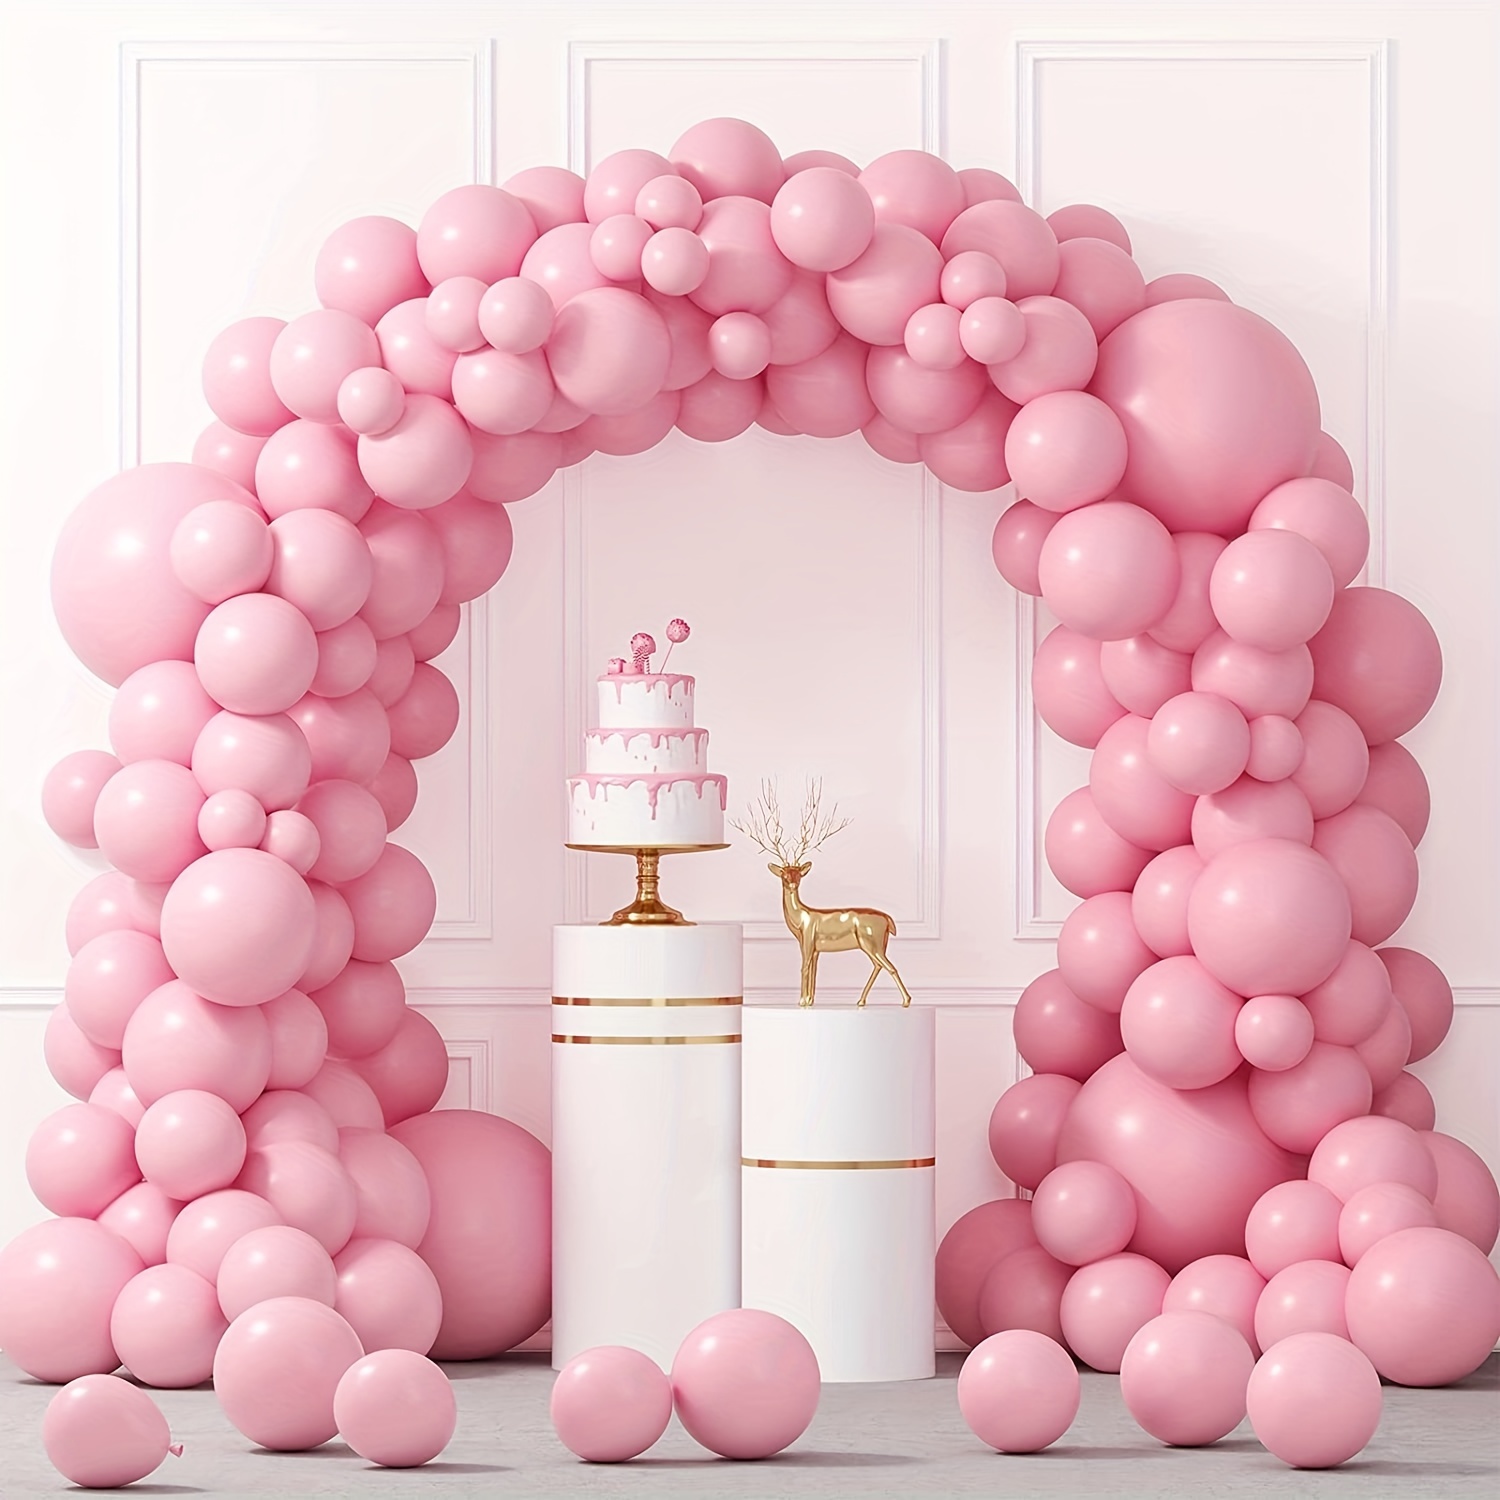 100 globos de látex blanco de 10 pulgadas, globos de helio blanco con  borlas para cumpleaños, boda, fiesta, baby shower, despedida de soltera